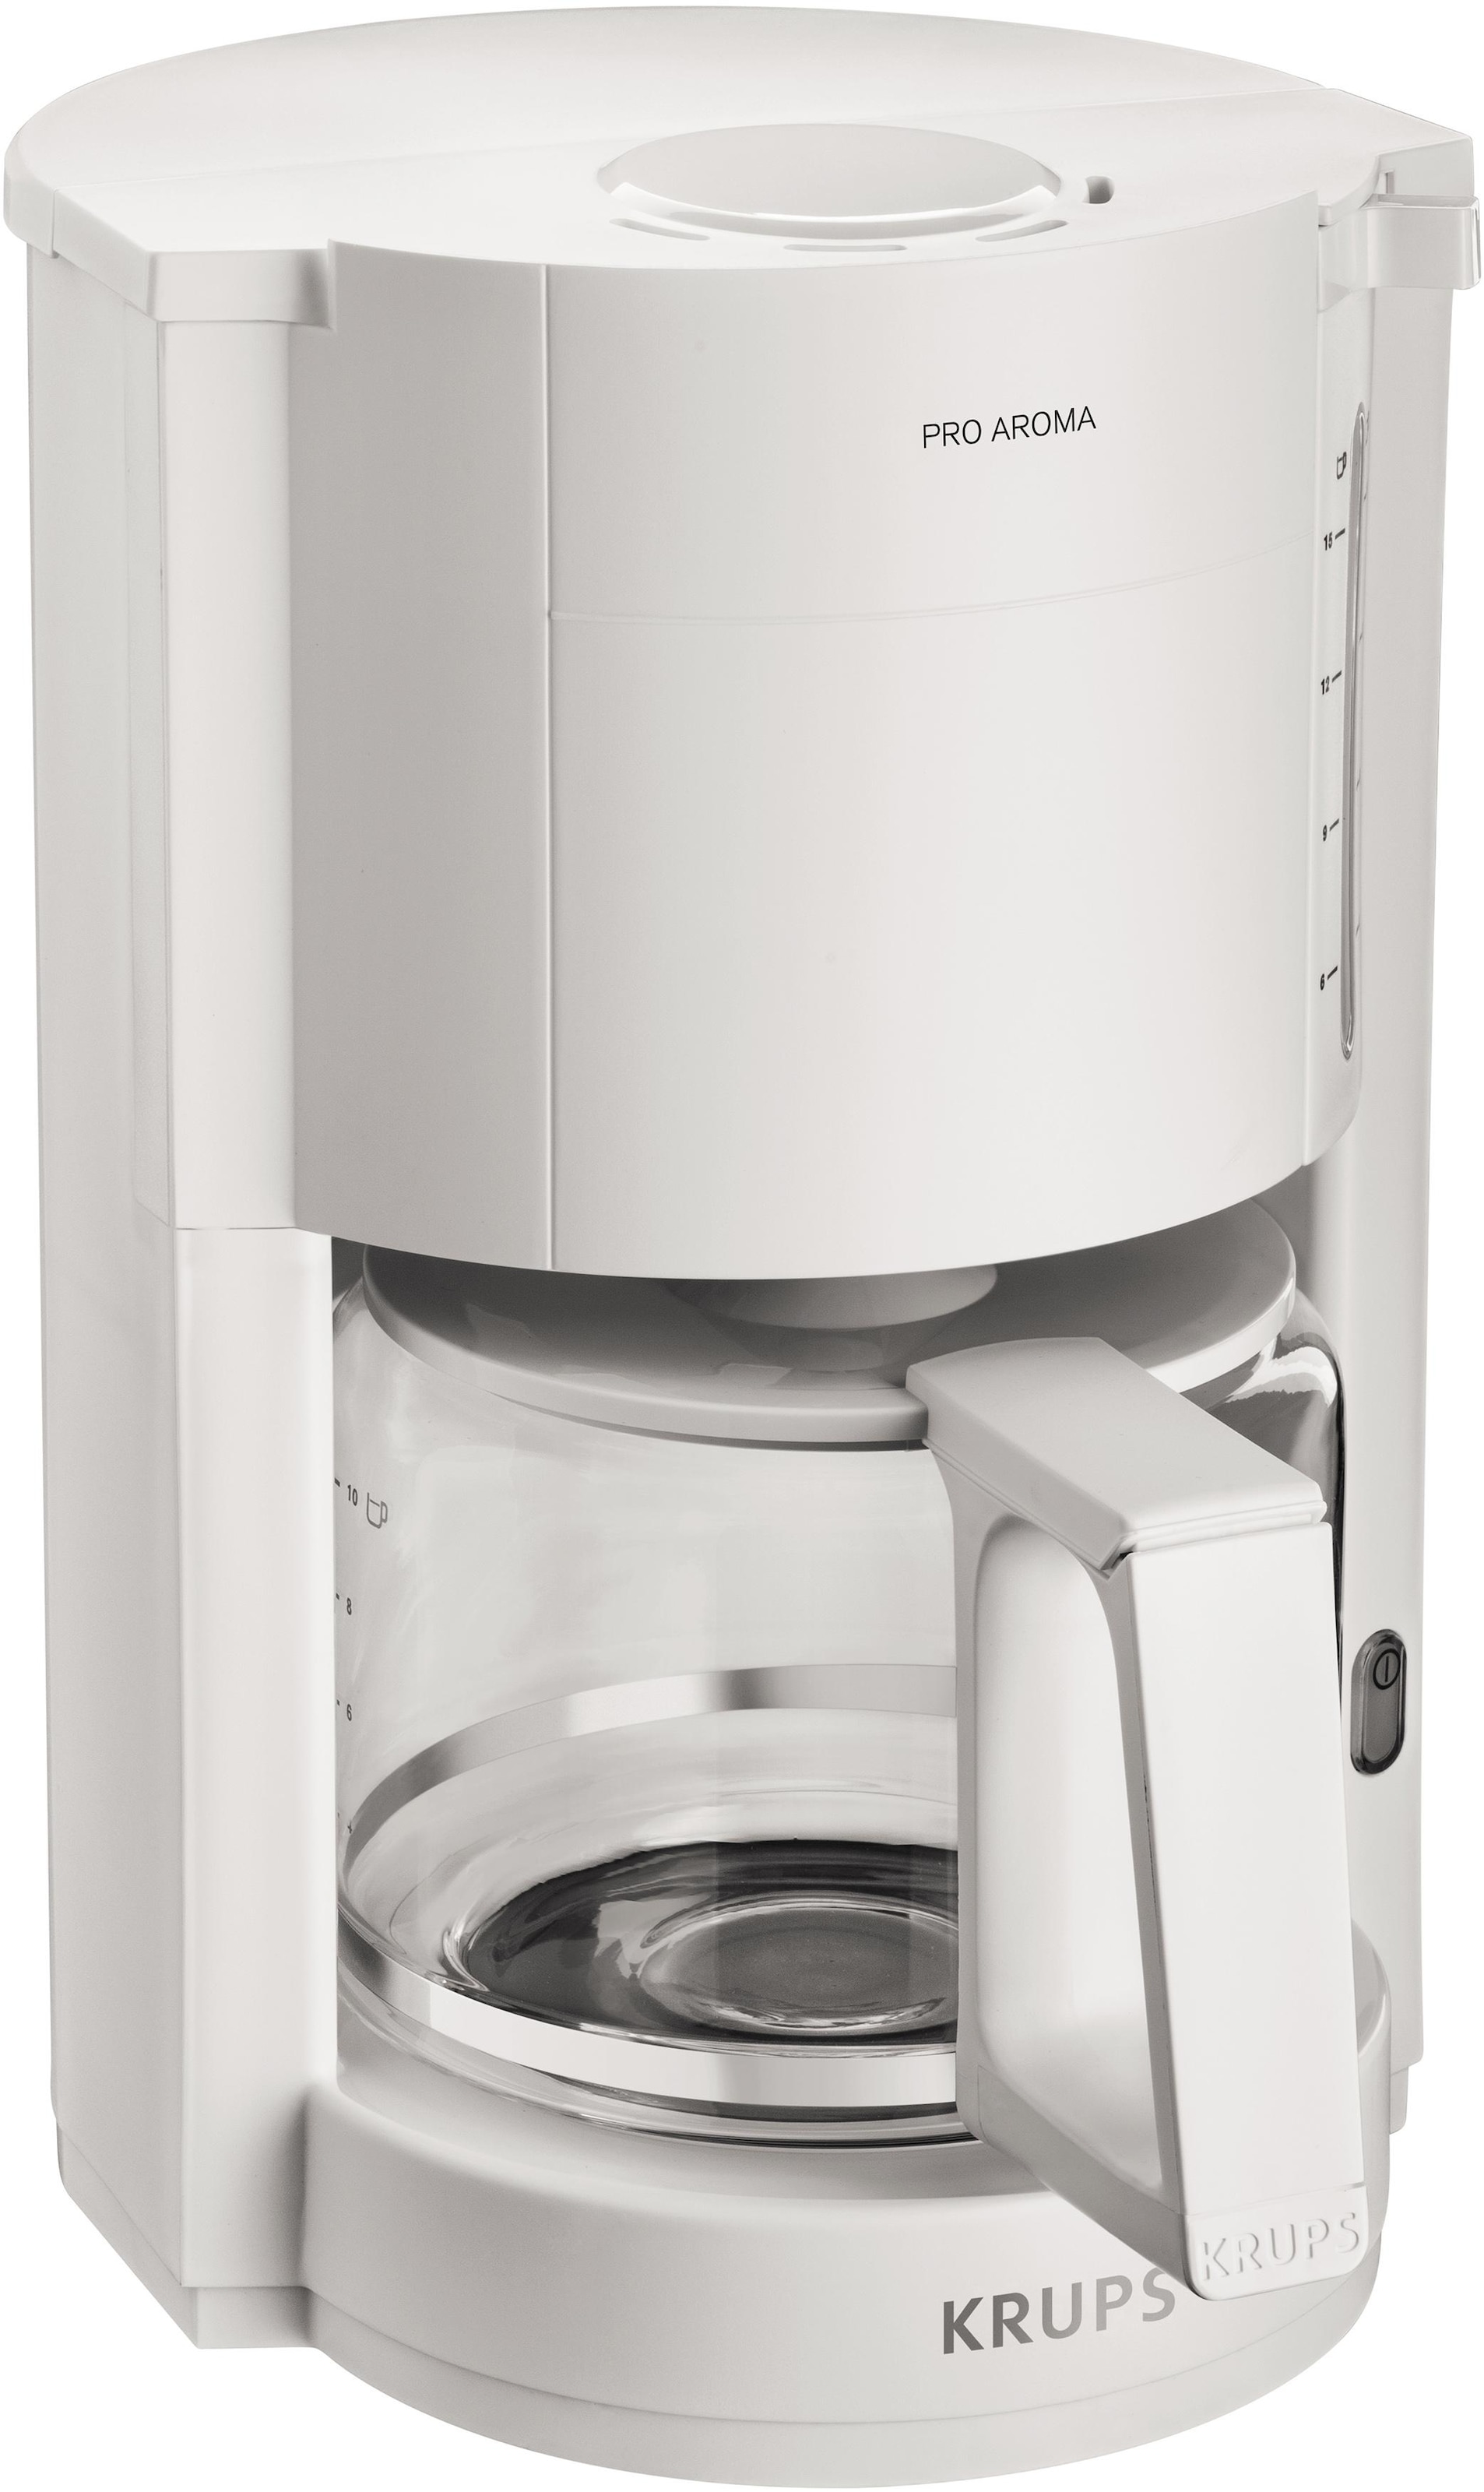 Krups Filterkaffeemaschine »F30901 W Abschaltung, Automatische Warmhaltefunktion, 1050 jetzt Pro bei Aroma«, OTTO